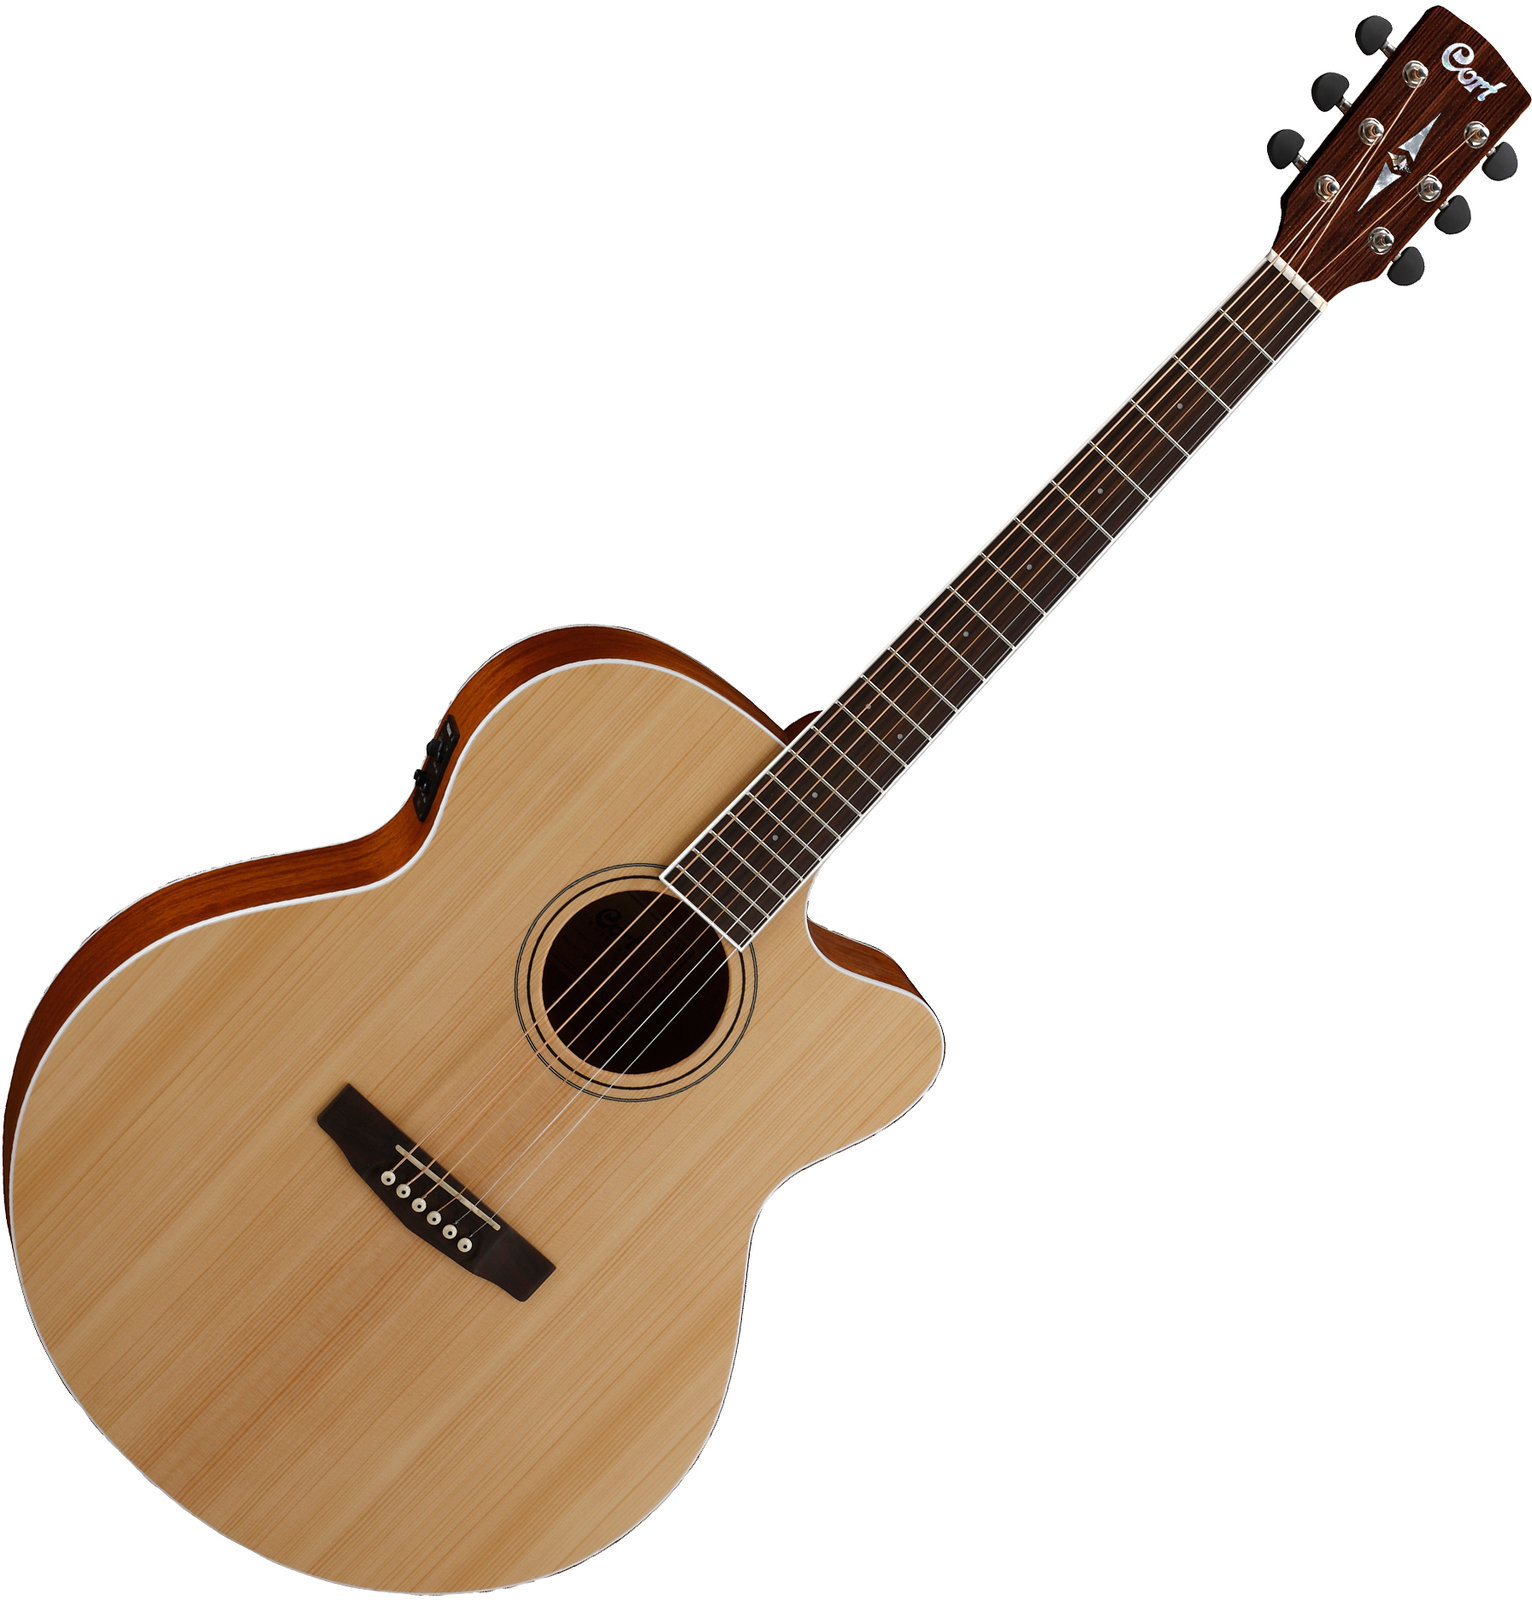 Ηλεκτροακουστική Κιθάρα Jumbo Cort CJ1F Natural Satin